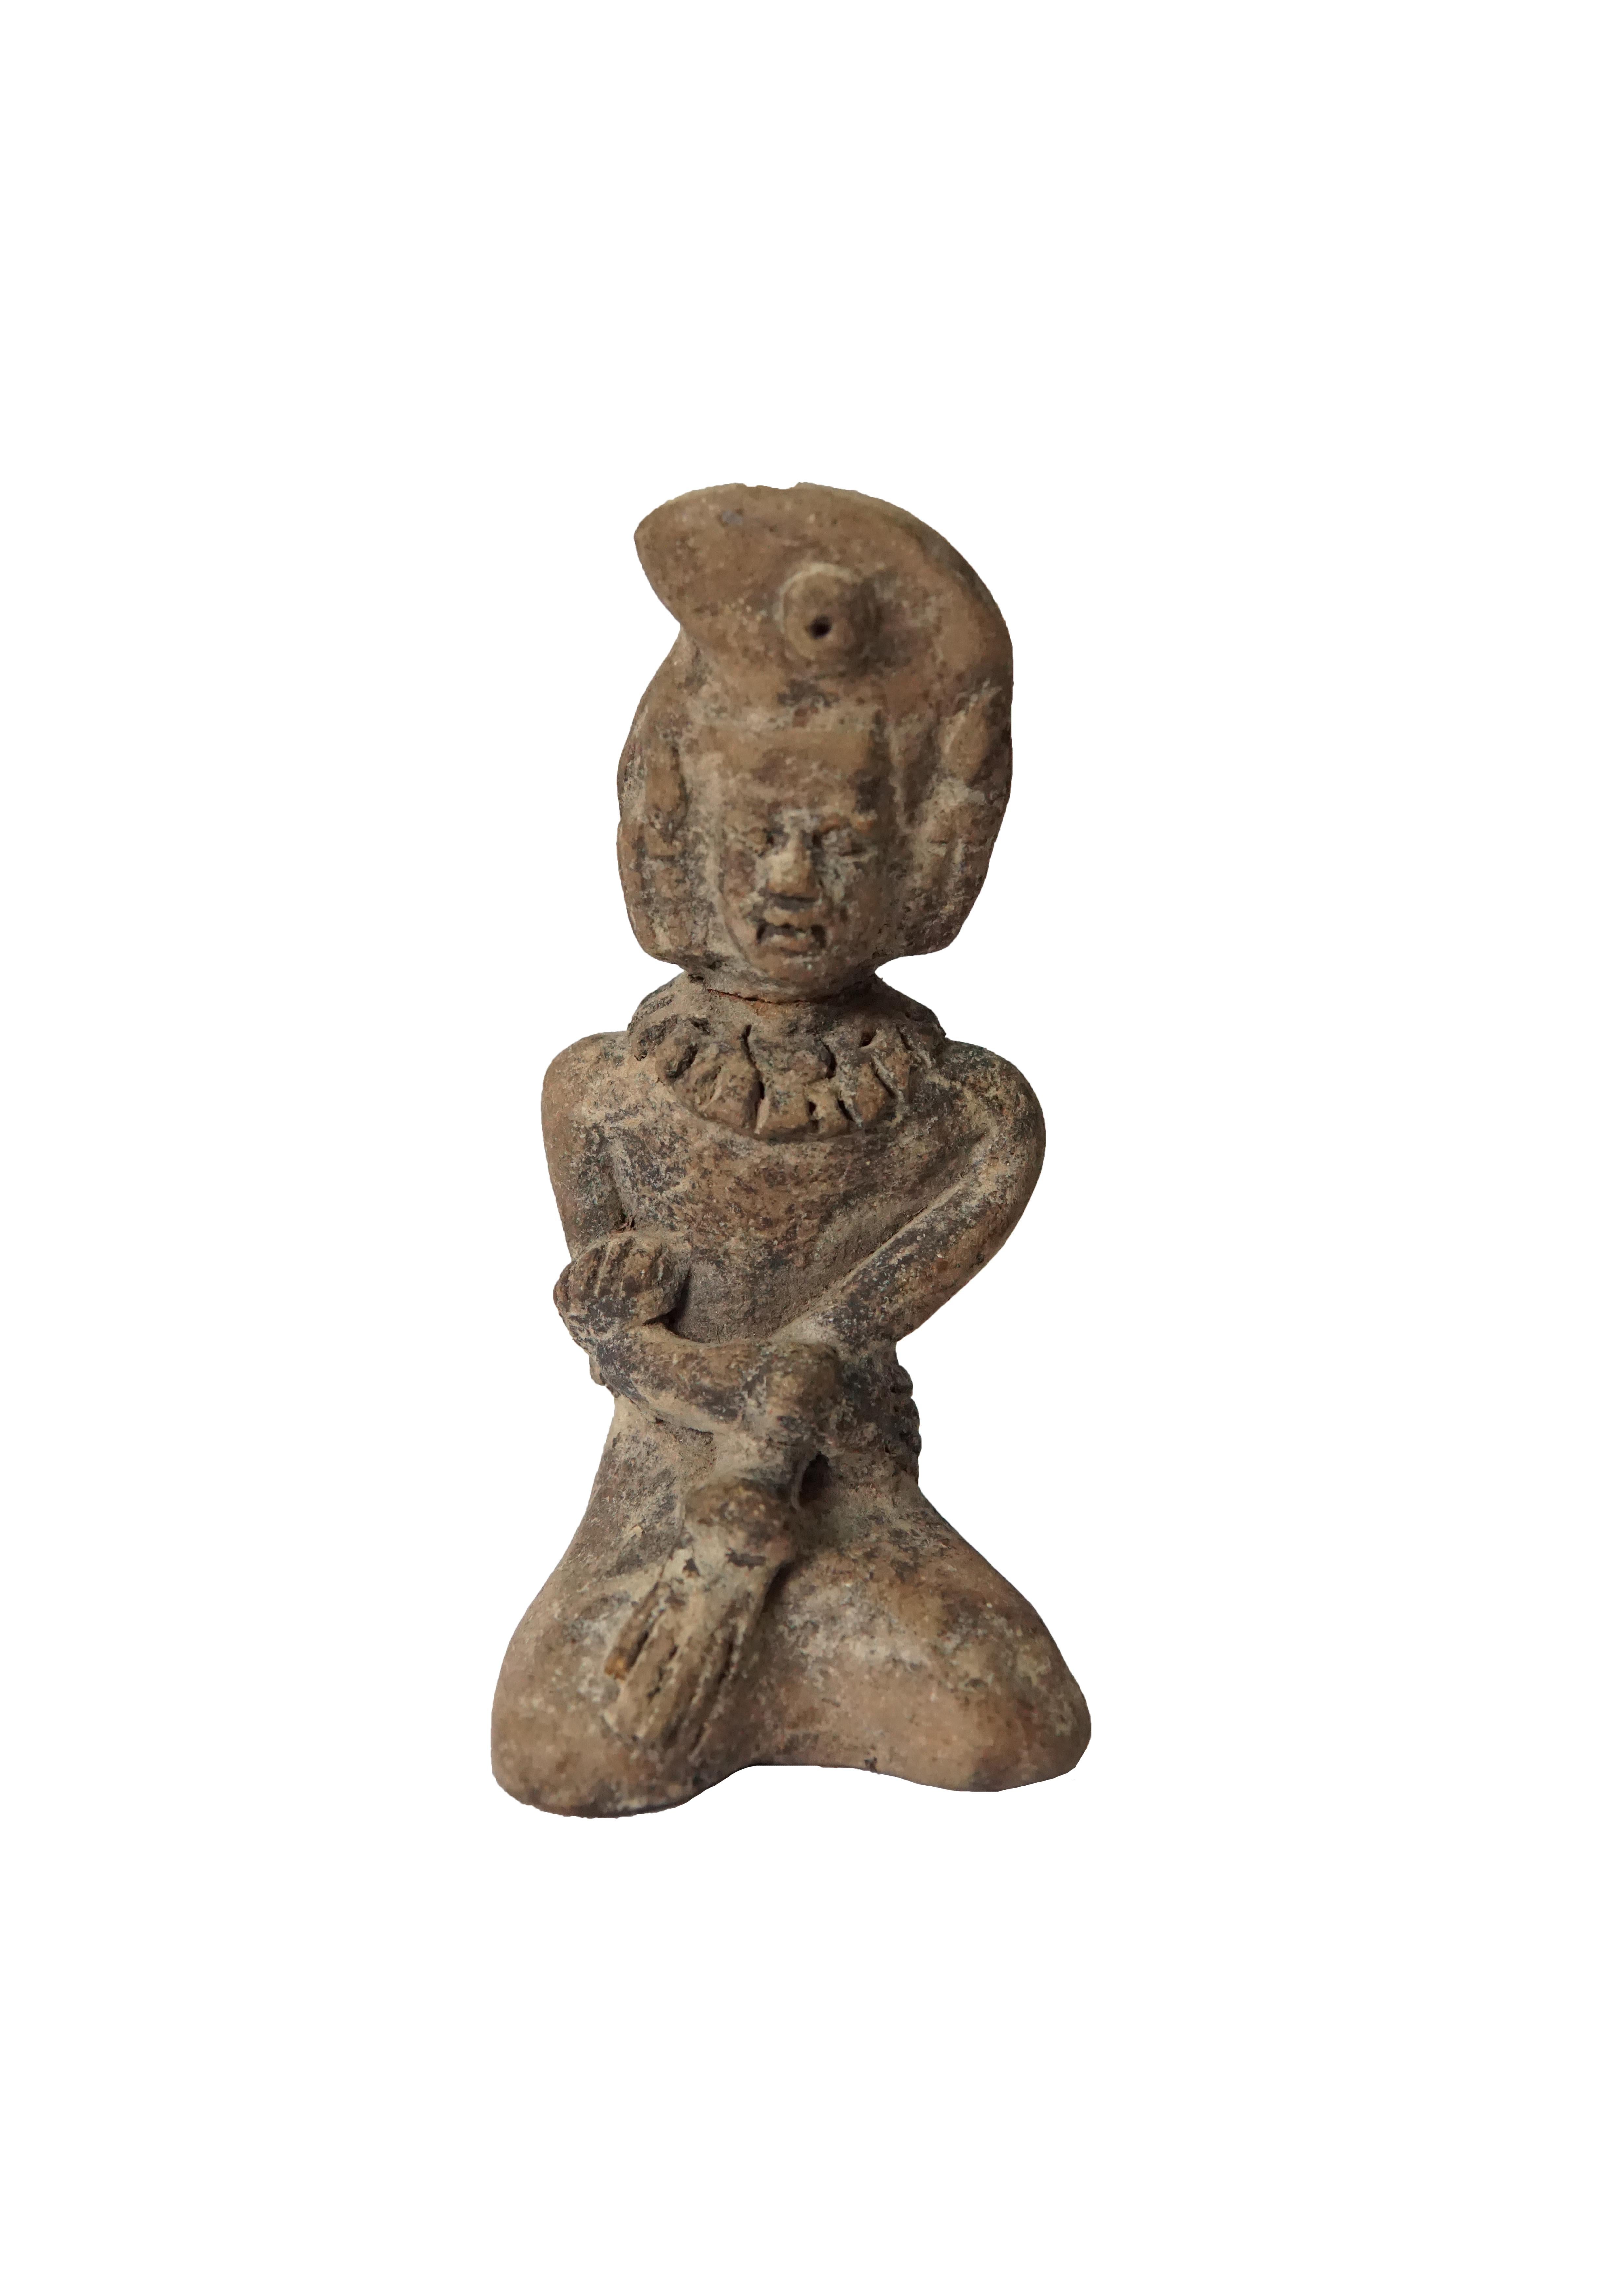 Paire de femmes agenouillées en terre cuite, visiblement anciennes, datant de l'empire Majapahit vers le 15e siècle. Celles-ci ont été excavées parmi les sanctuaires du mont Penganggungan, à l'est de Java, en Indonésie. La poterie en terre cuite